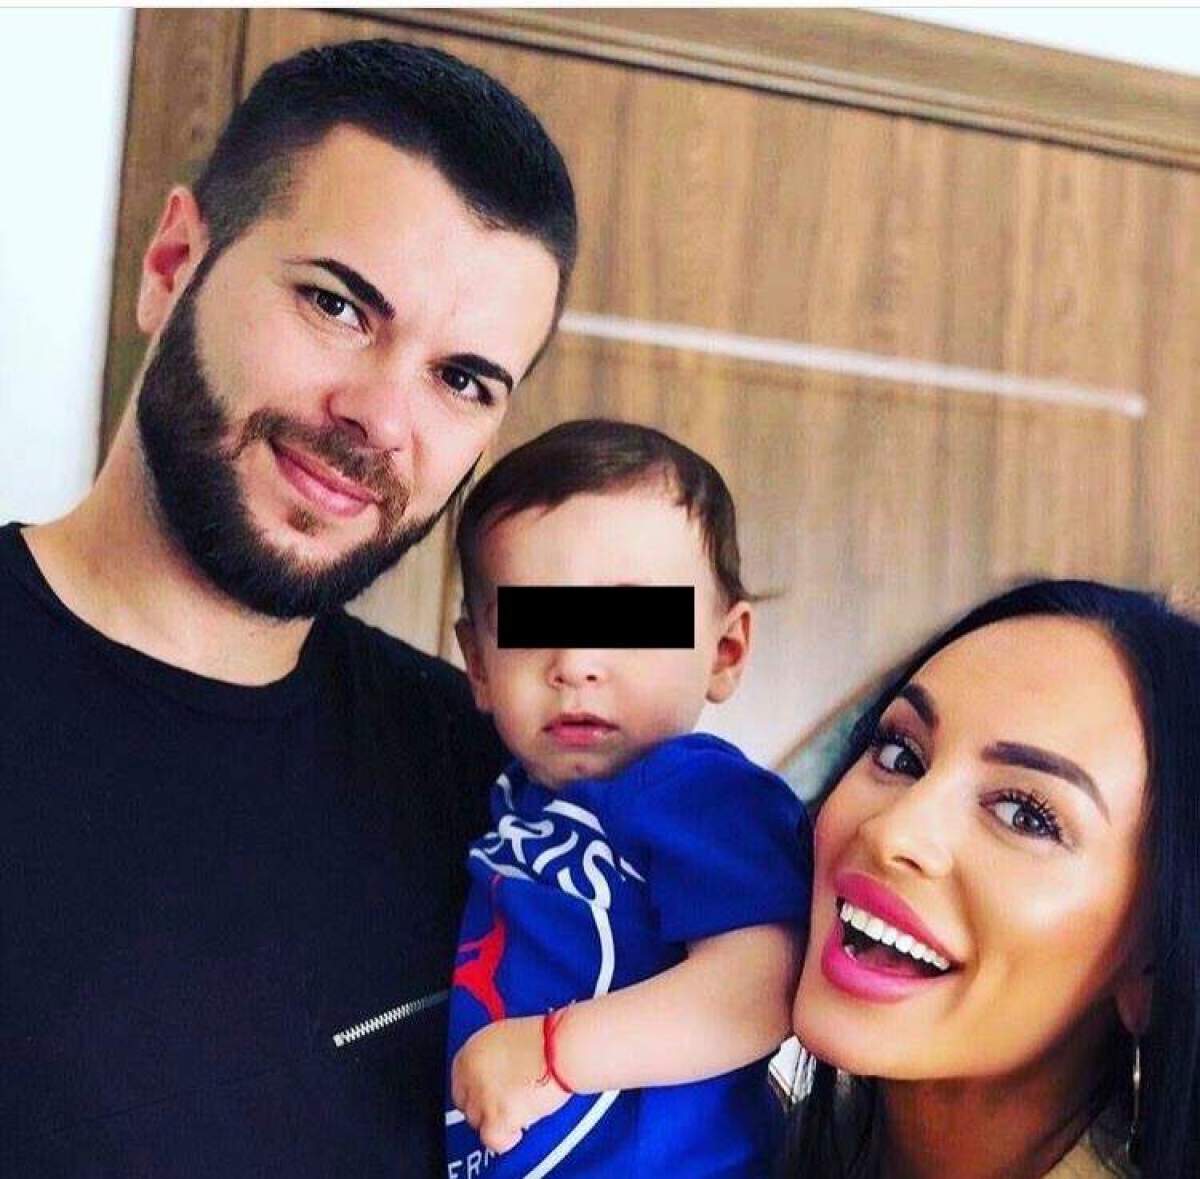 Soția lui Cristian Daminuță, declarații exclusive la Antena Stars, despre împăcarea cu celebrul fotbalist. "Ne-a prins bine separarea" / VIDEO